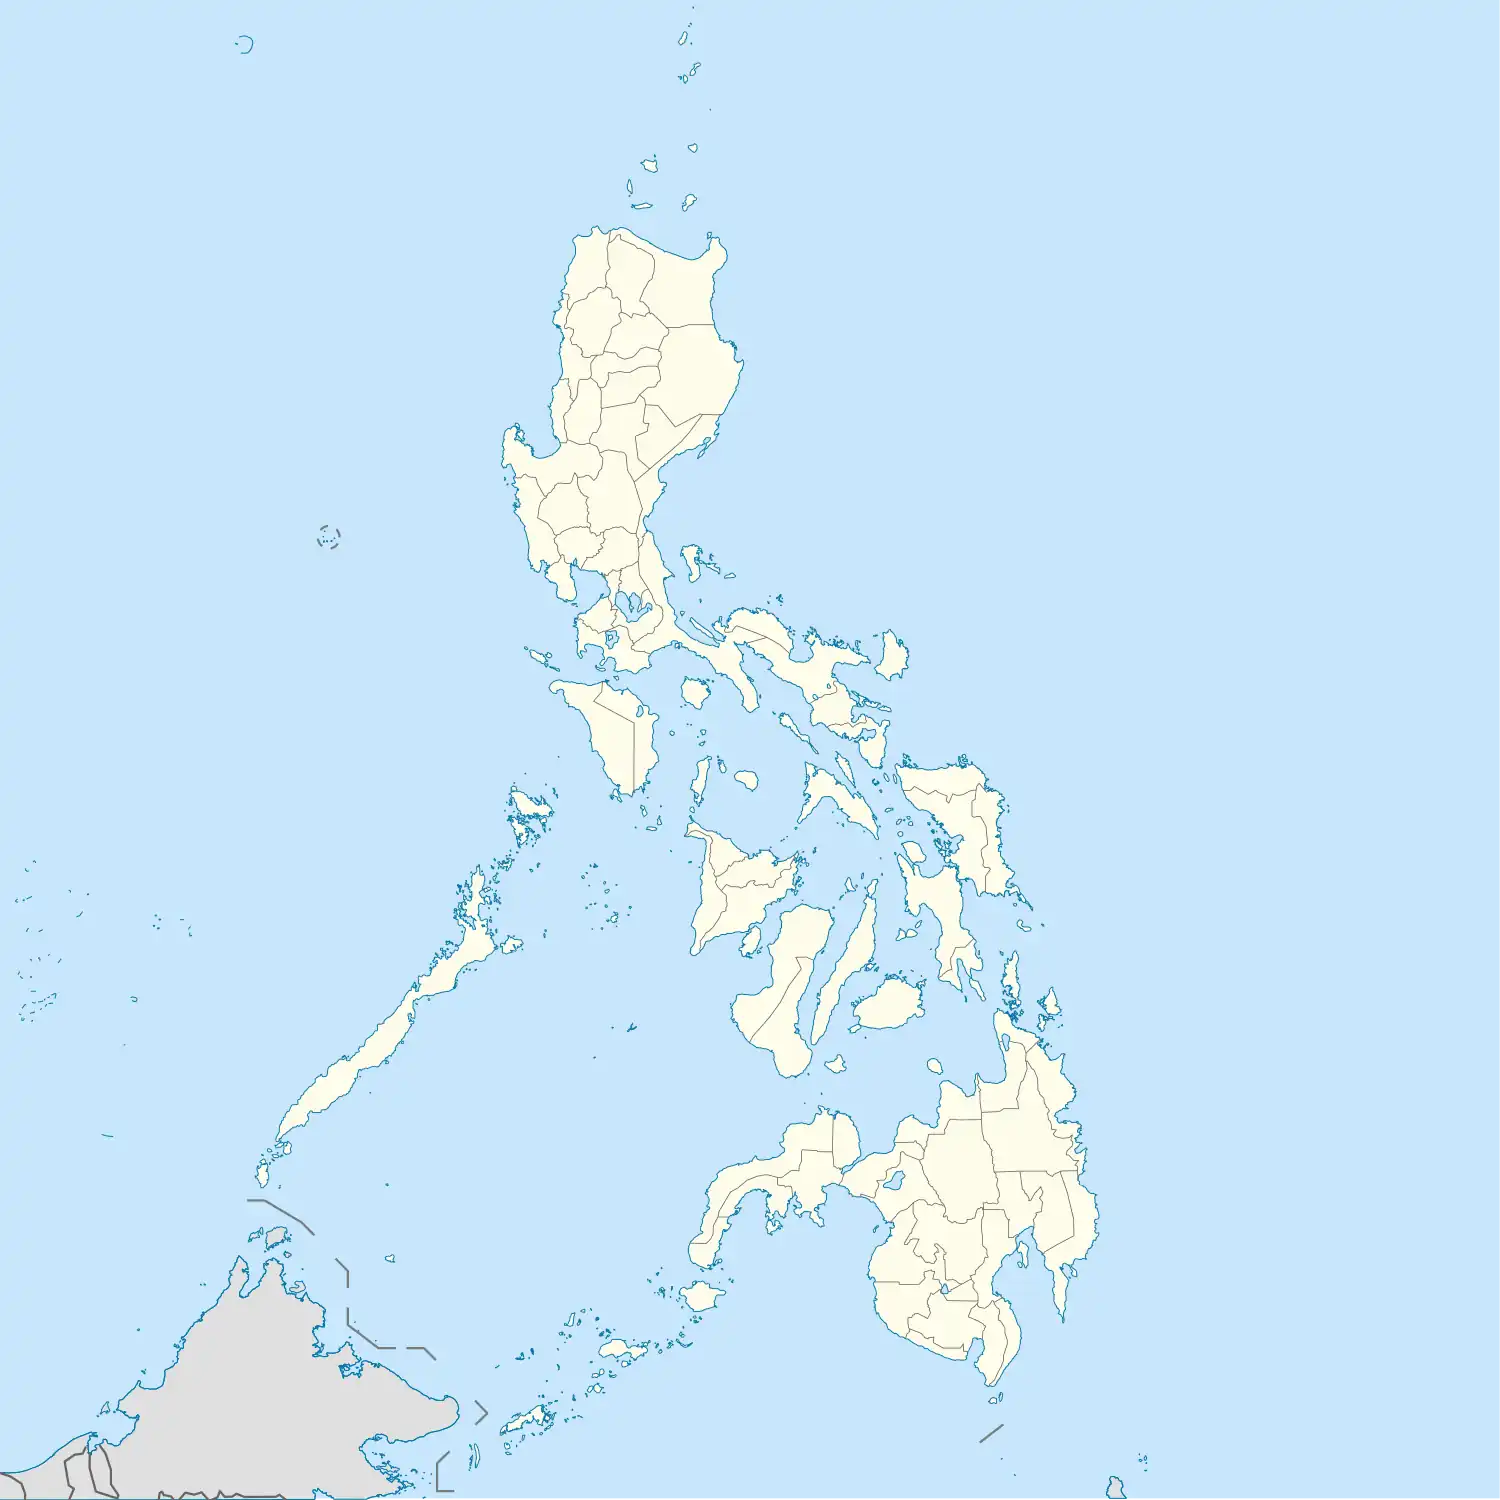 Romblon is located in Philippines